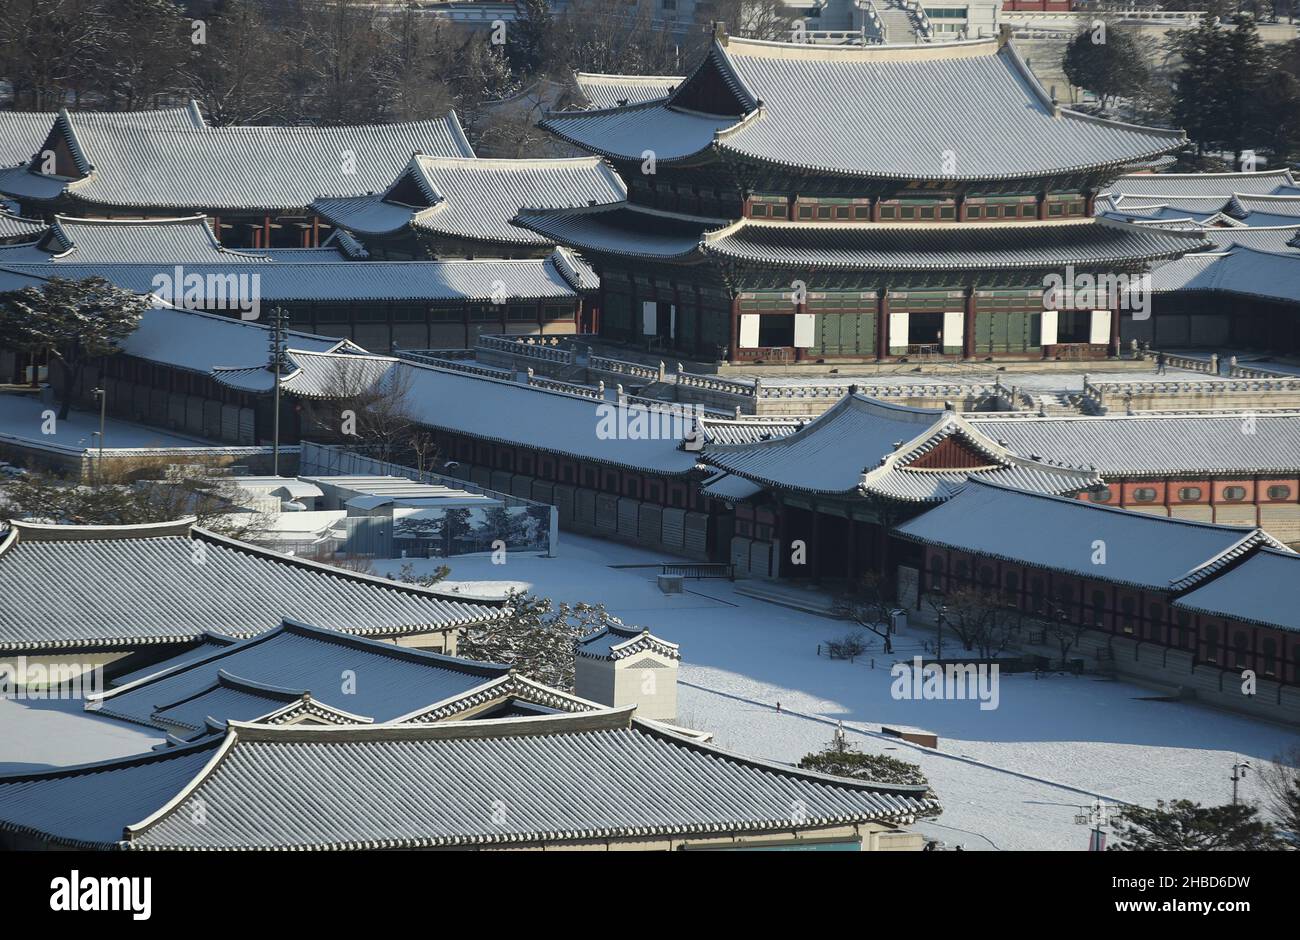 19th de Dic de 2021. Palacio Gyeongbok en la nieve El Palacio Gyeongbok, el palacio principal de la Dinastía Joseon (1392-1910), está cubierto de nieve durante la noche el 19 de diciembre de 2021, en el centro de Seúl. Crédito: Yonhap/Newcom/Alamy Live News Foto de stock